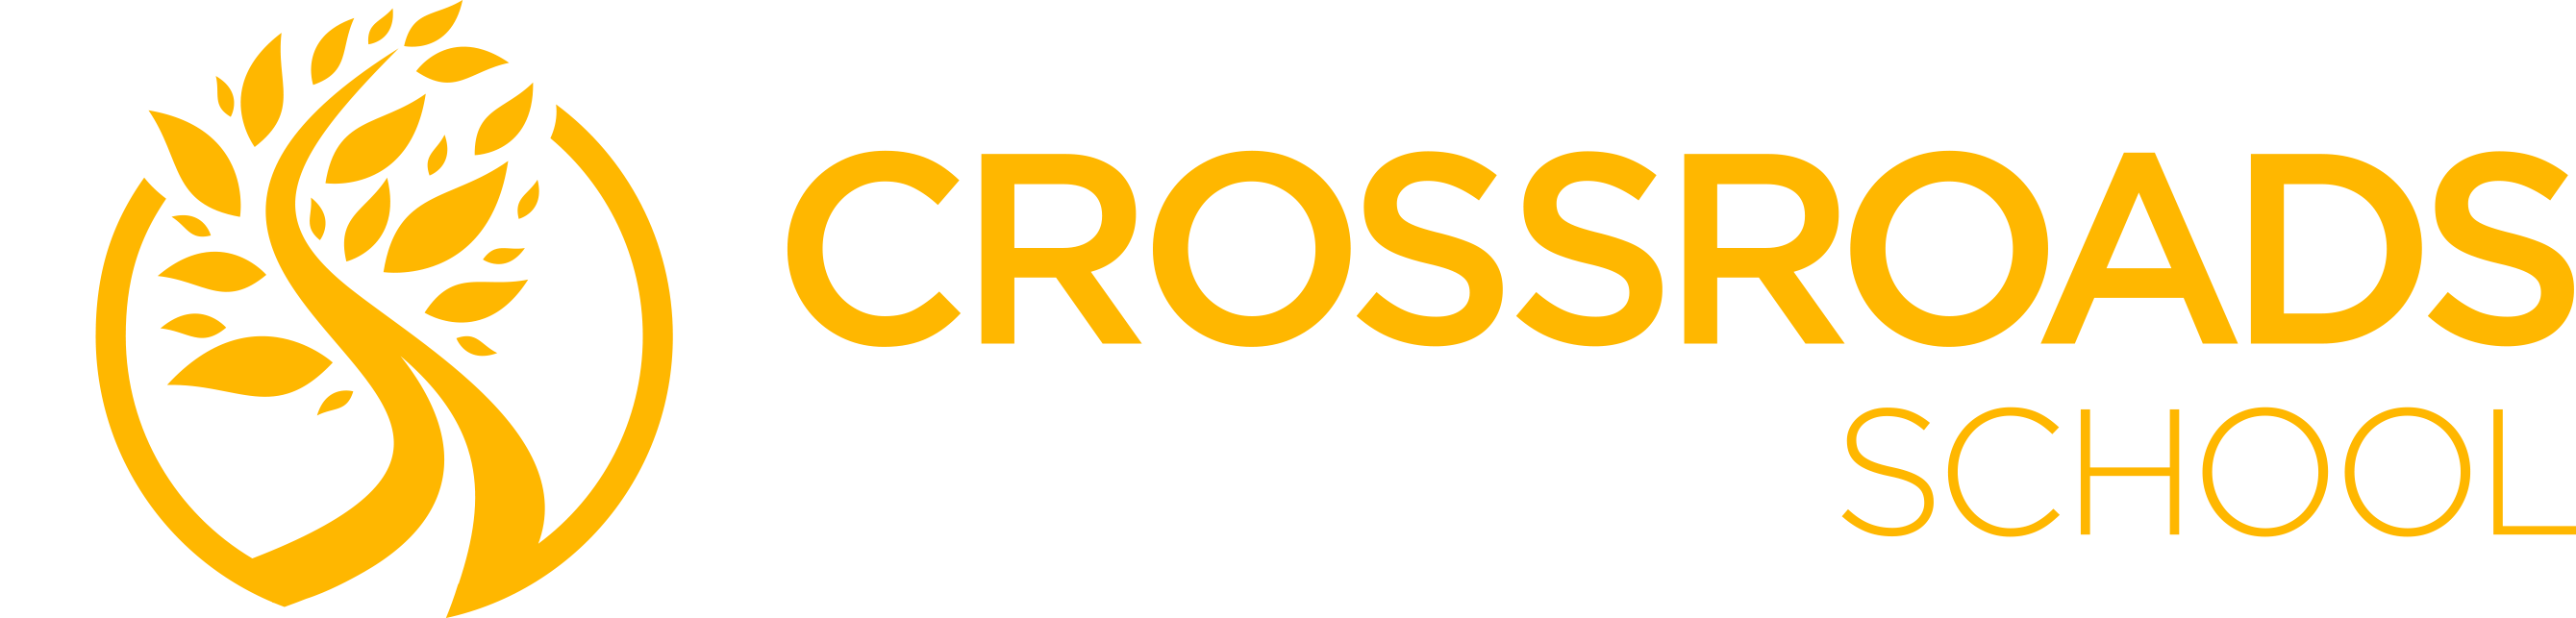 Crossroads Logo - Crossroads School